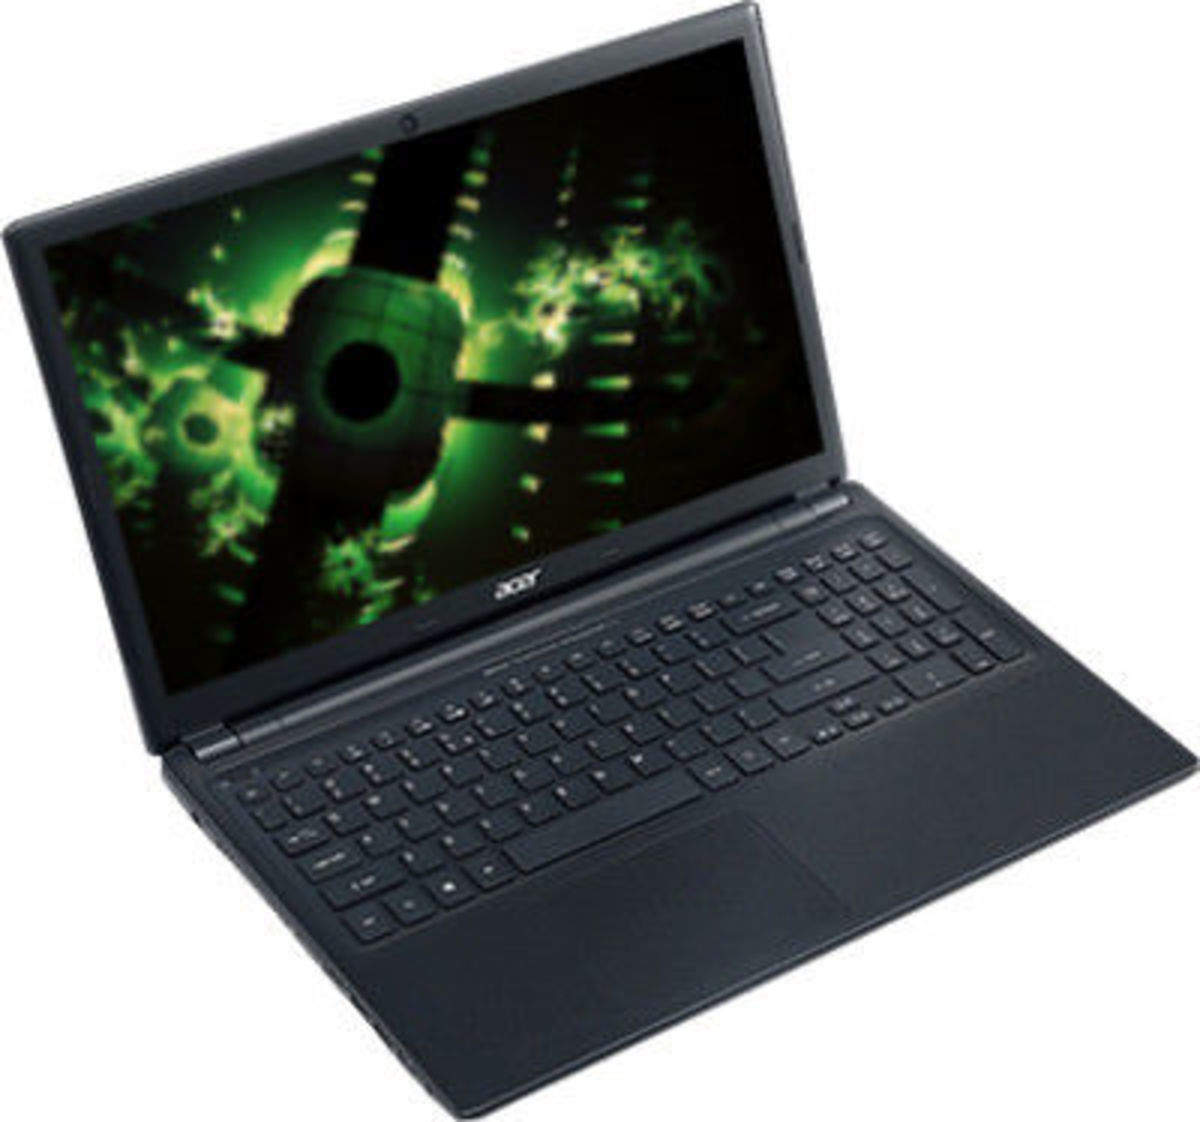 Асер Аспайр v5 571g. Ноутбук Acer Aspire v5-571g. Ноутбук g1. Acer Aspire v5-571 совместимые модели. Acer aspire v5 драйверы